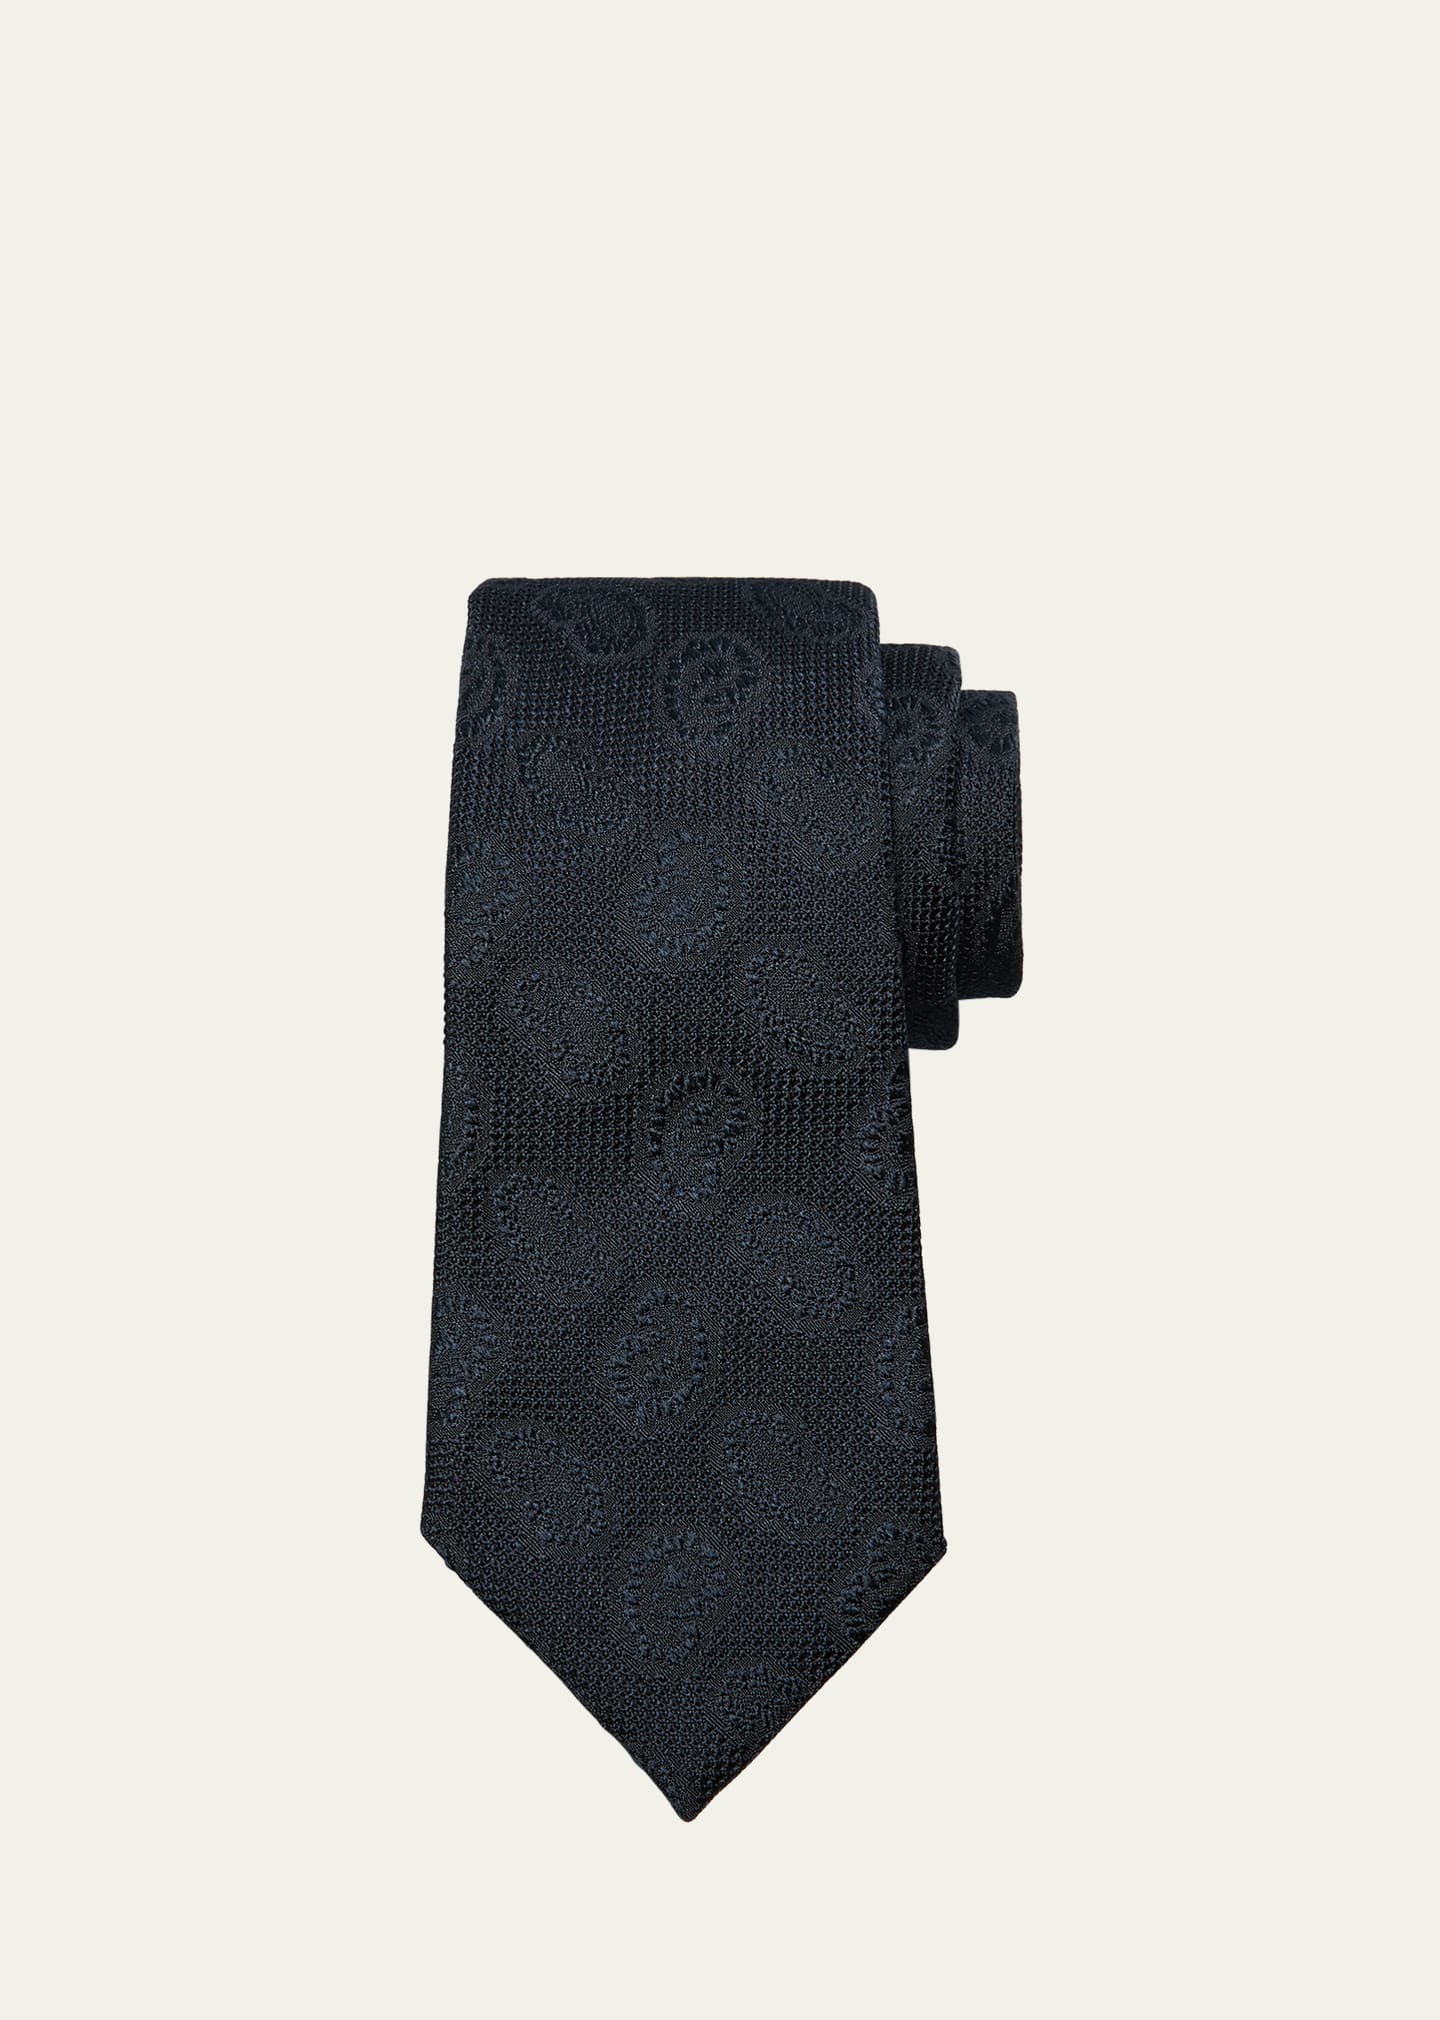 Zegna Men's Silk Jacquard Tie In Black